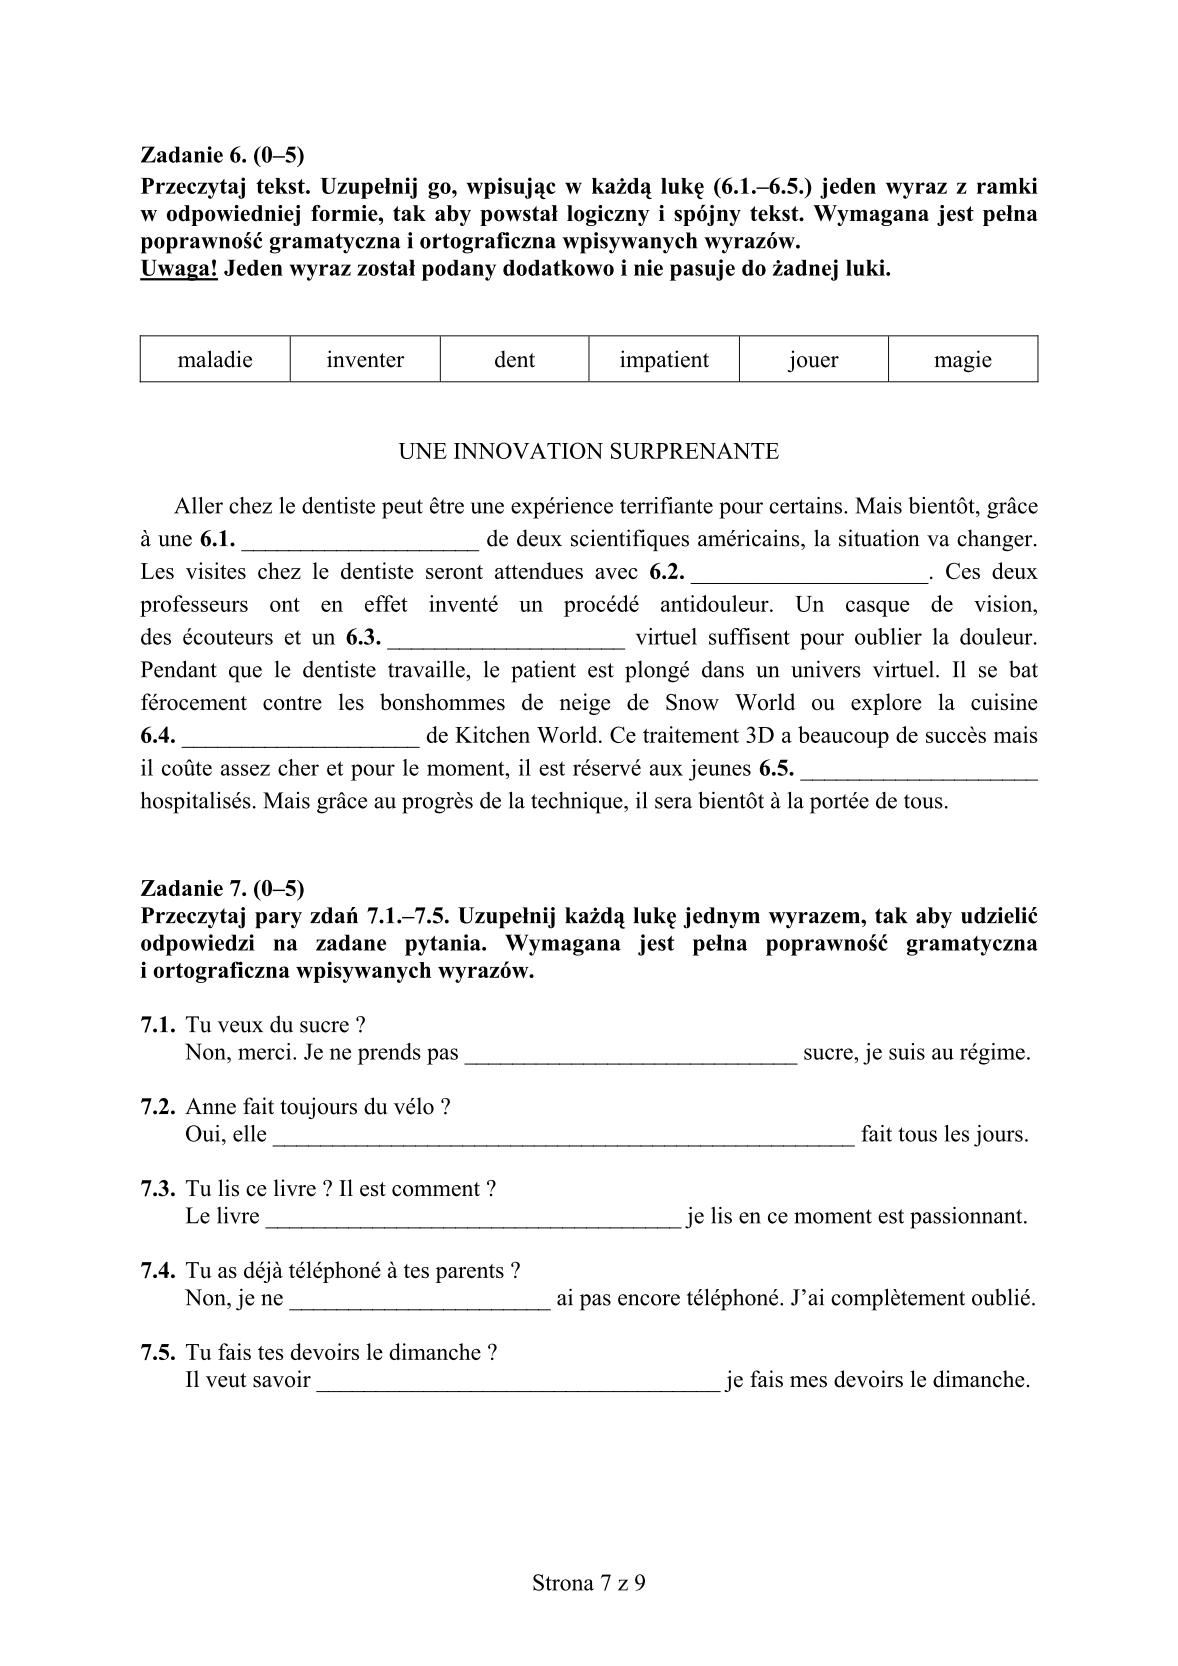 pytania-francuski-poziom-rozszerzony-egzamin-gimnazjalny-25.04.2014-7